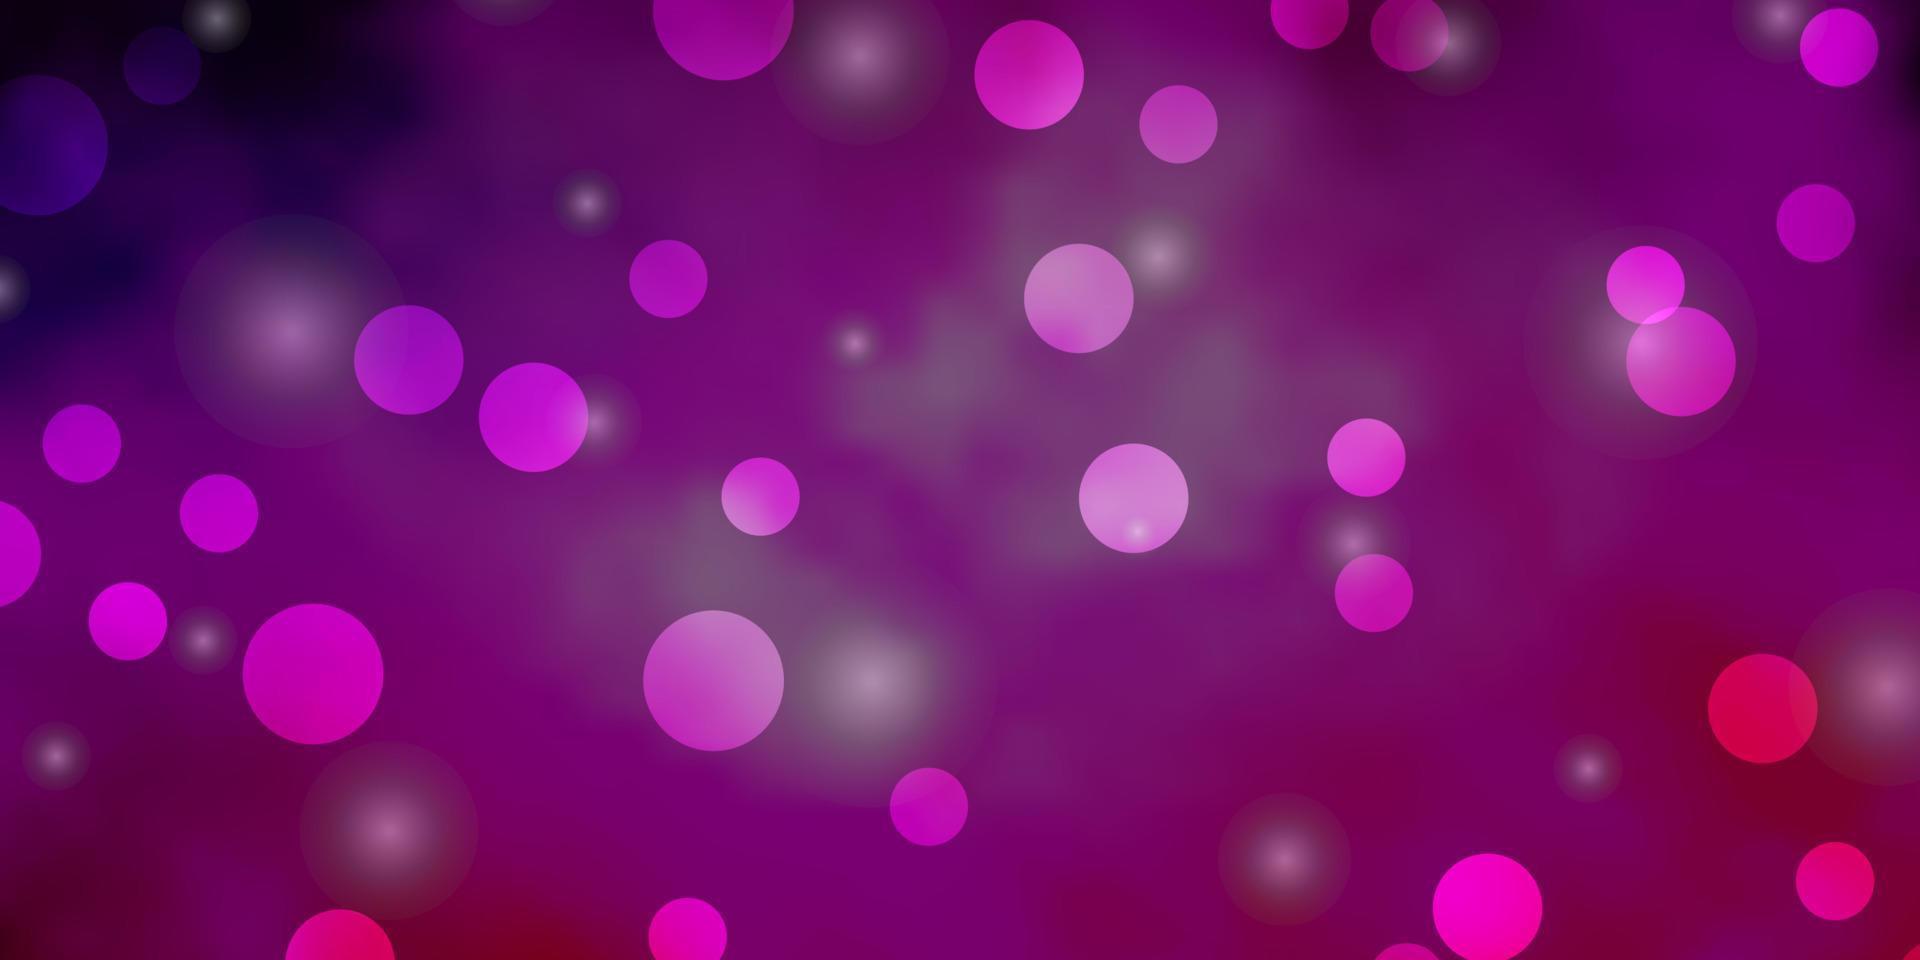 modelo de vetor roxo, rosa claro com círculos, estrelas.